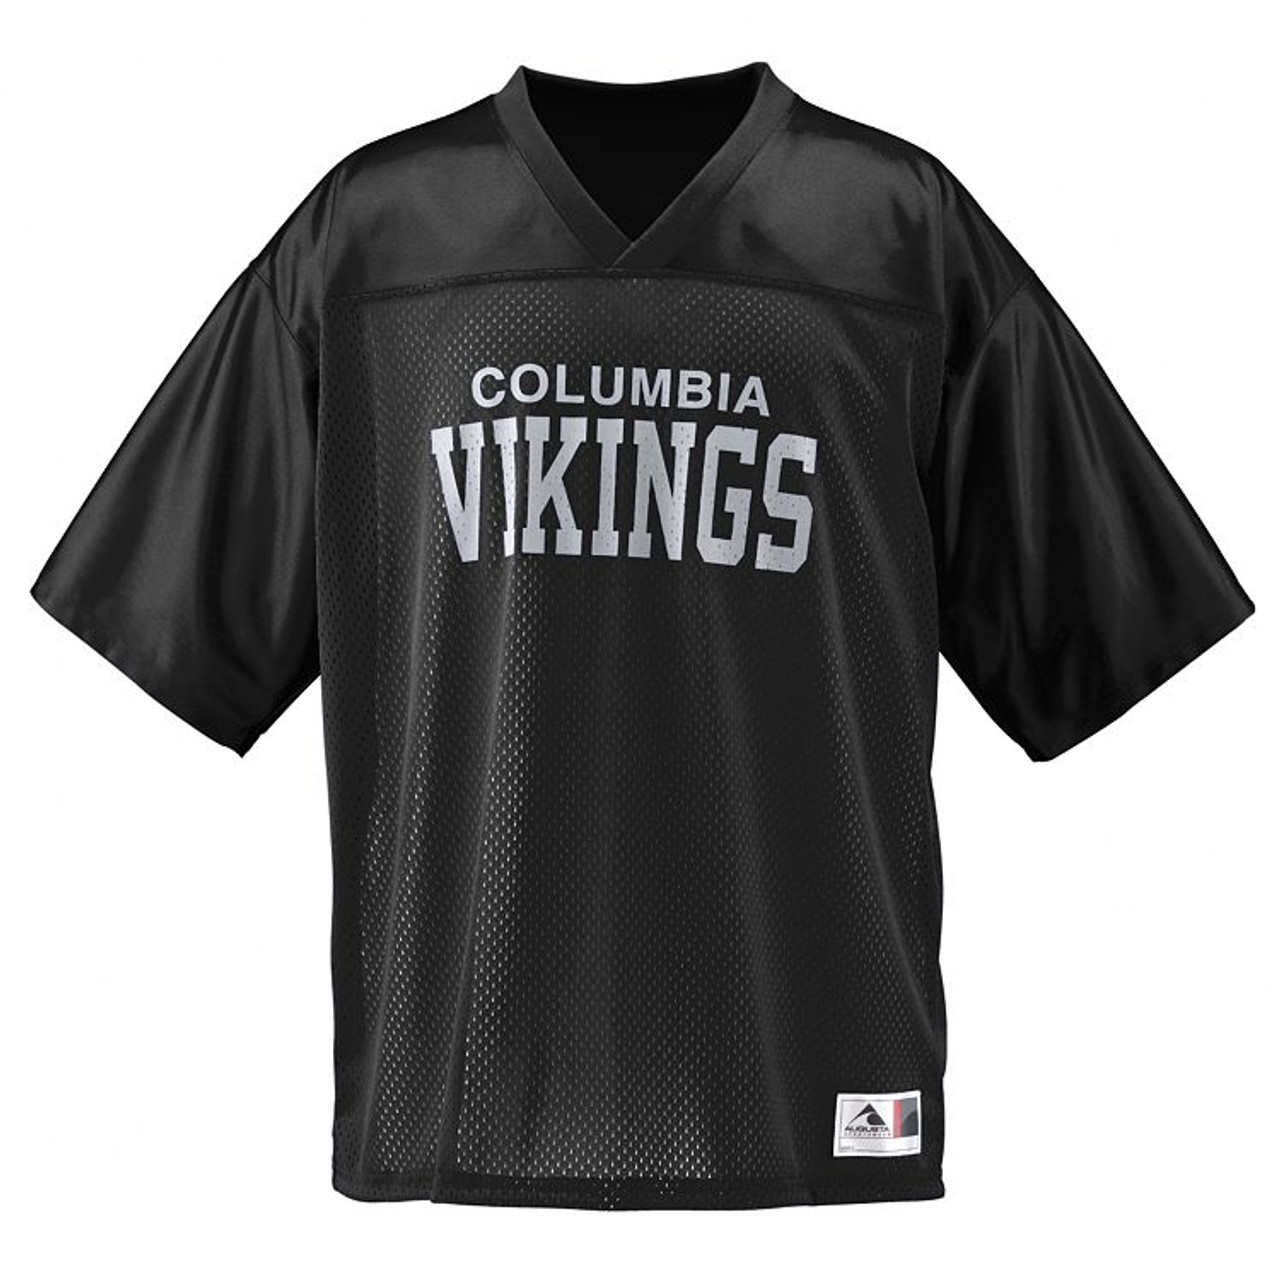 Vikings - Custom Men's Football Uniform